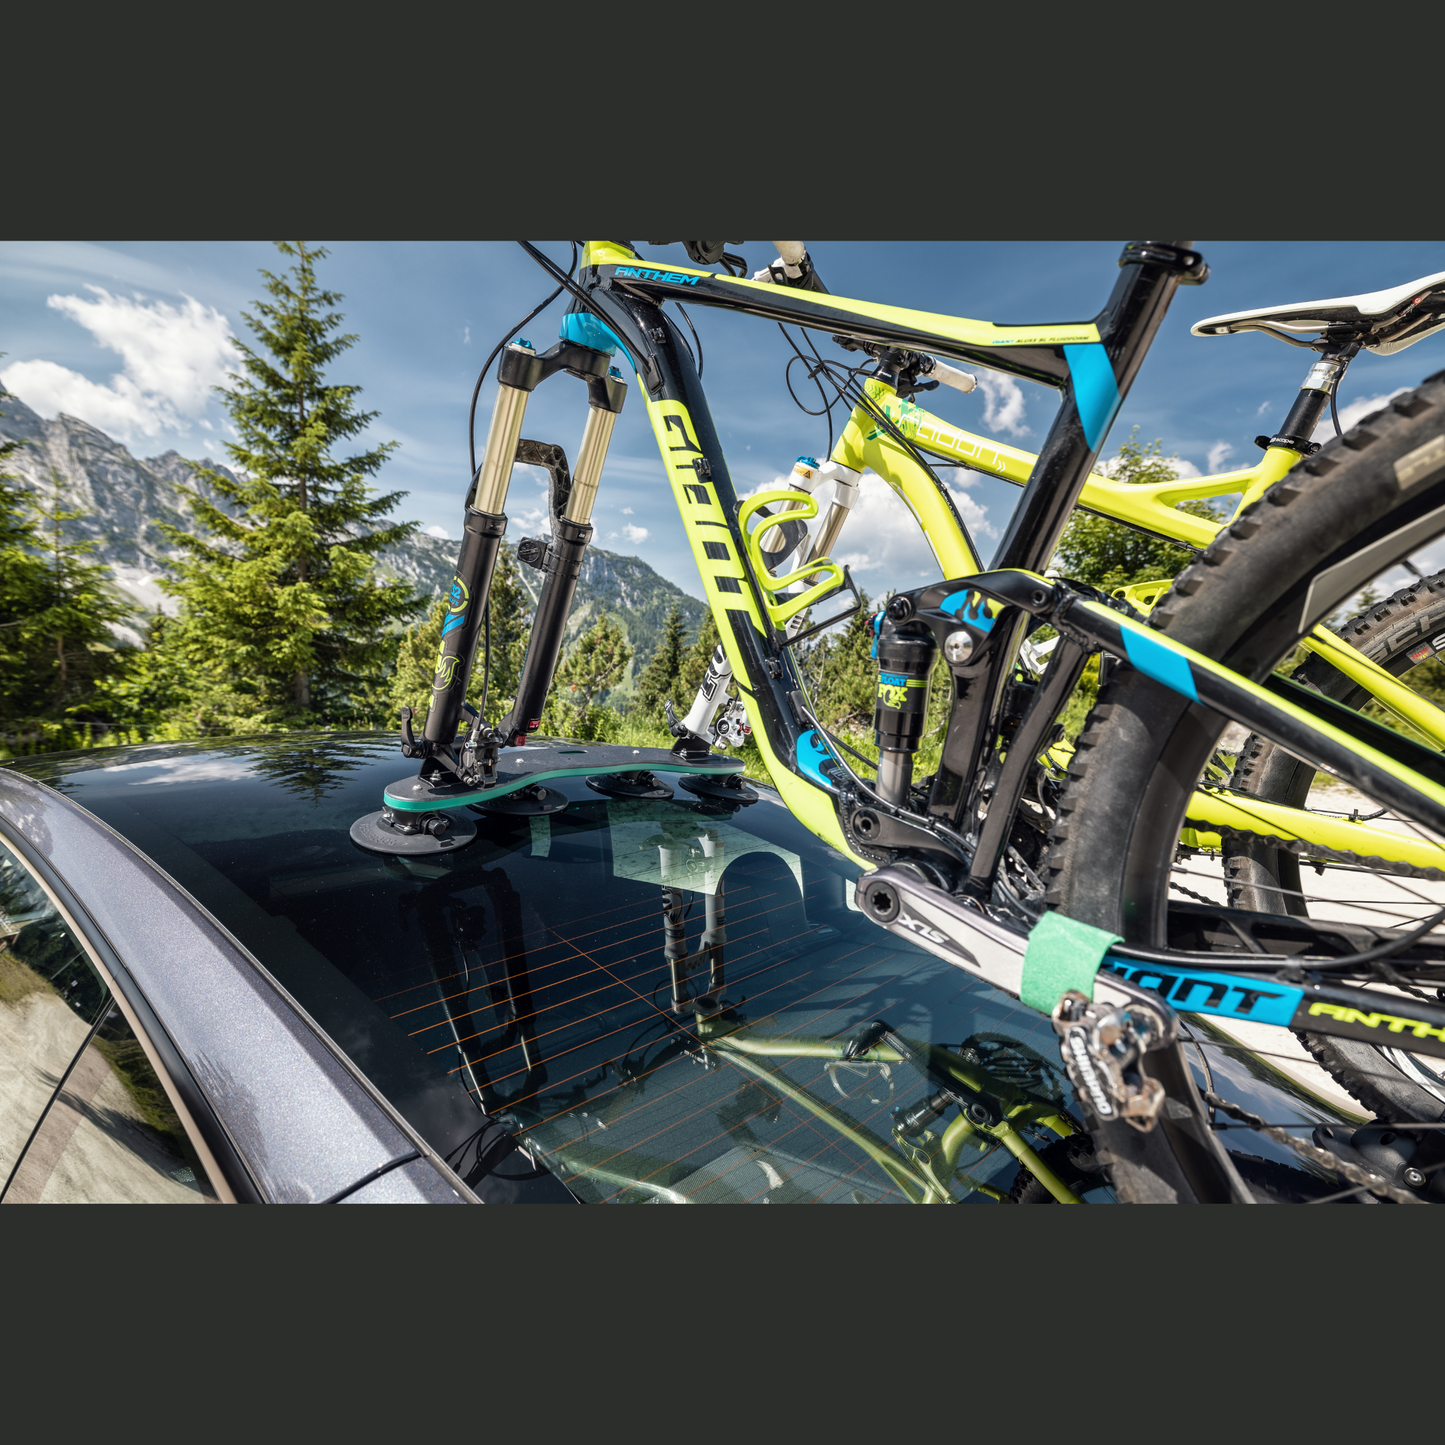 TÜV-gecertificeerde TreeFrog dakdrager voor veil ig fietsvervoer